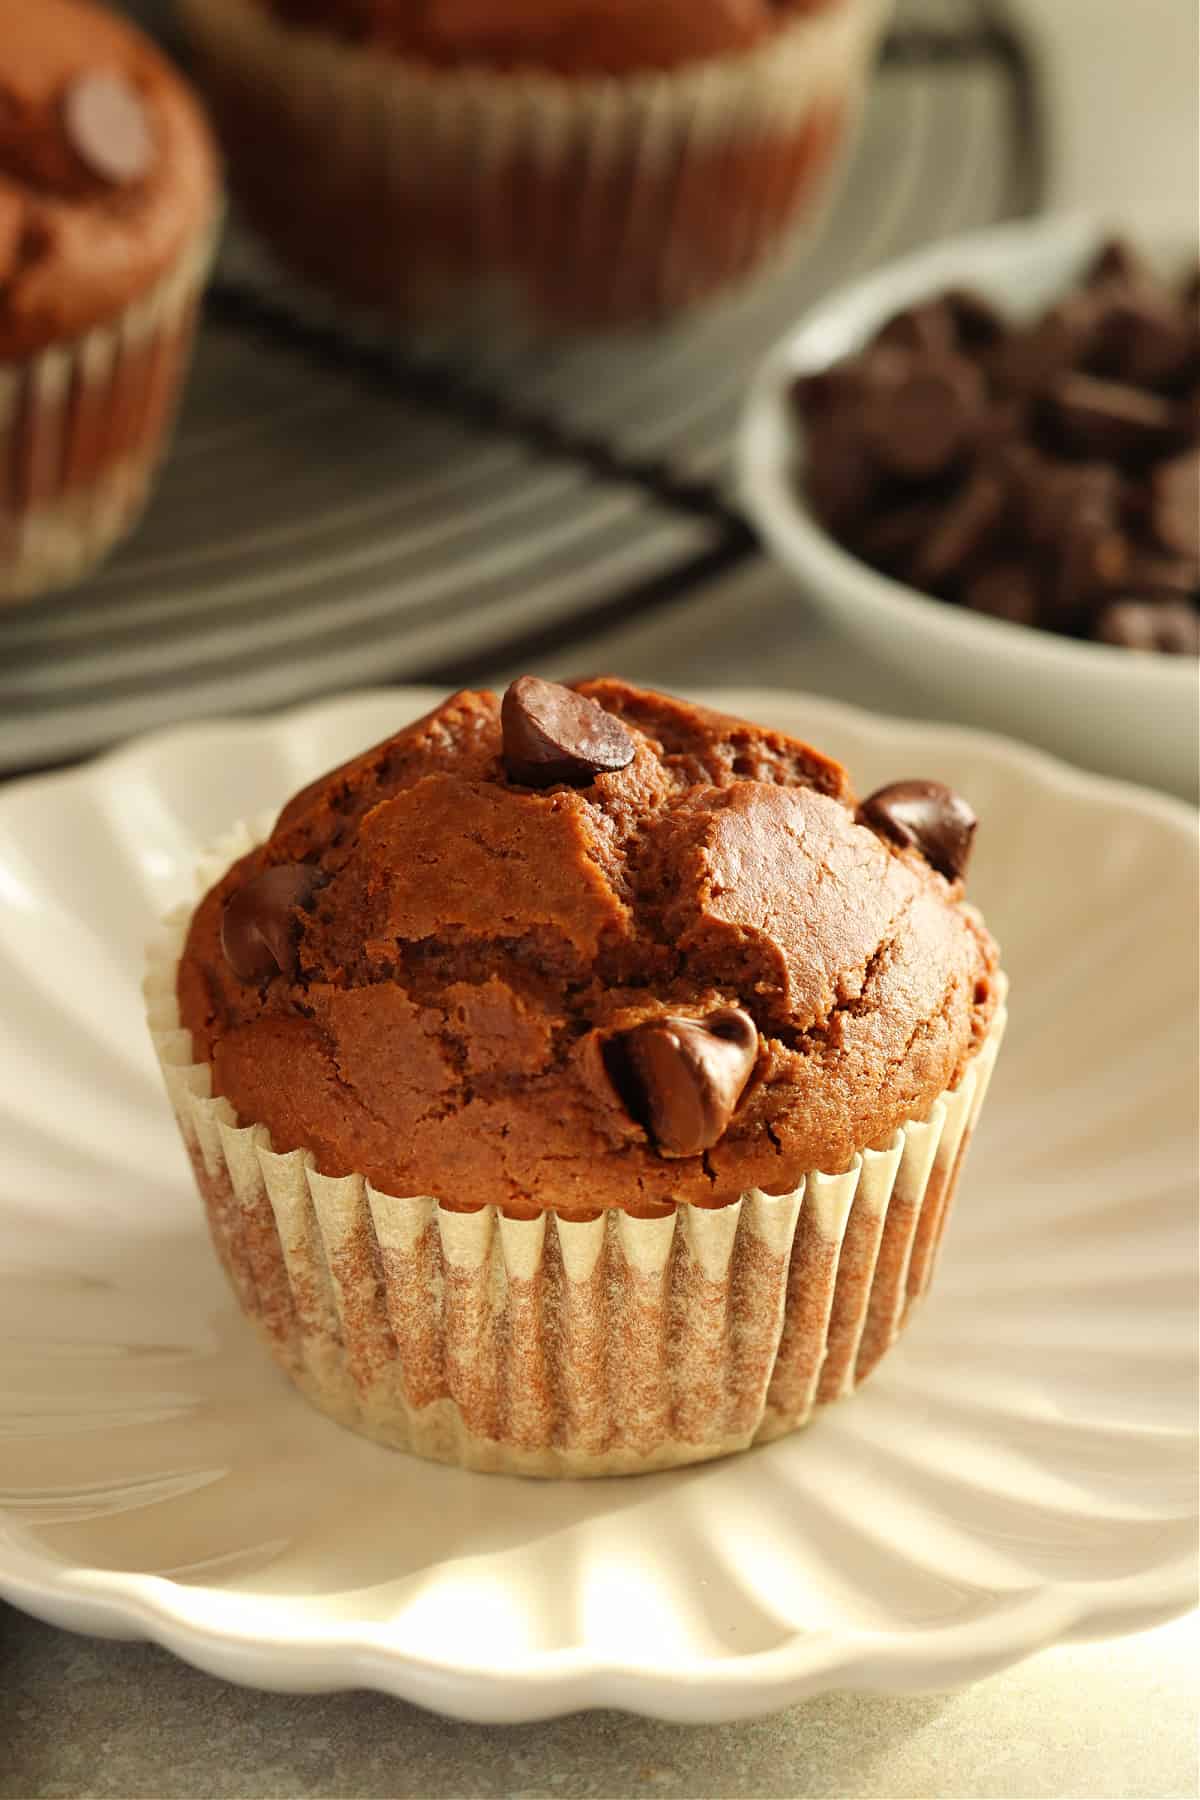 Muffin al cioccolato in un involucro su un piattino con più muffin dietro.